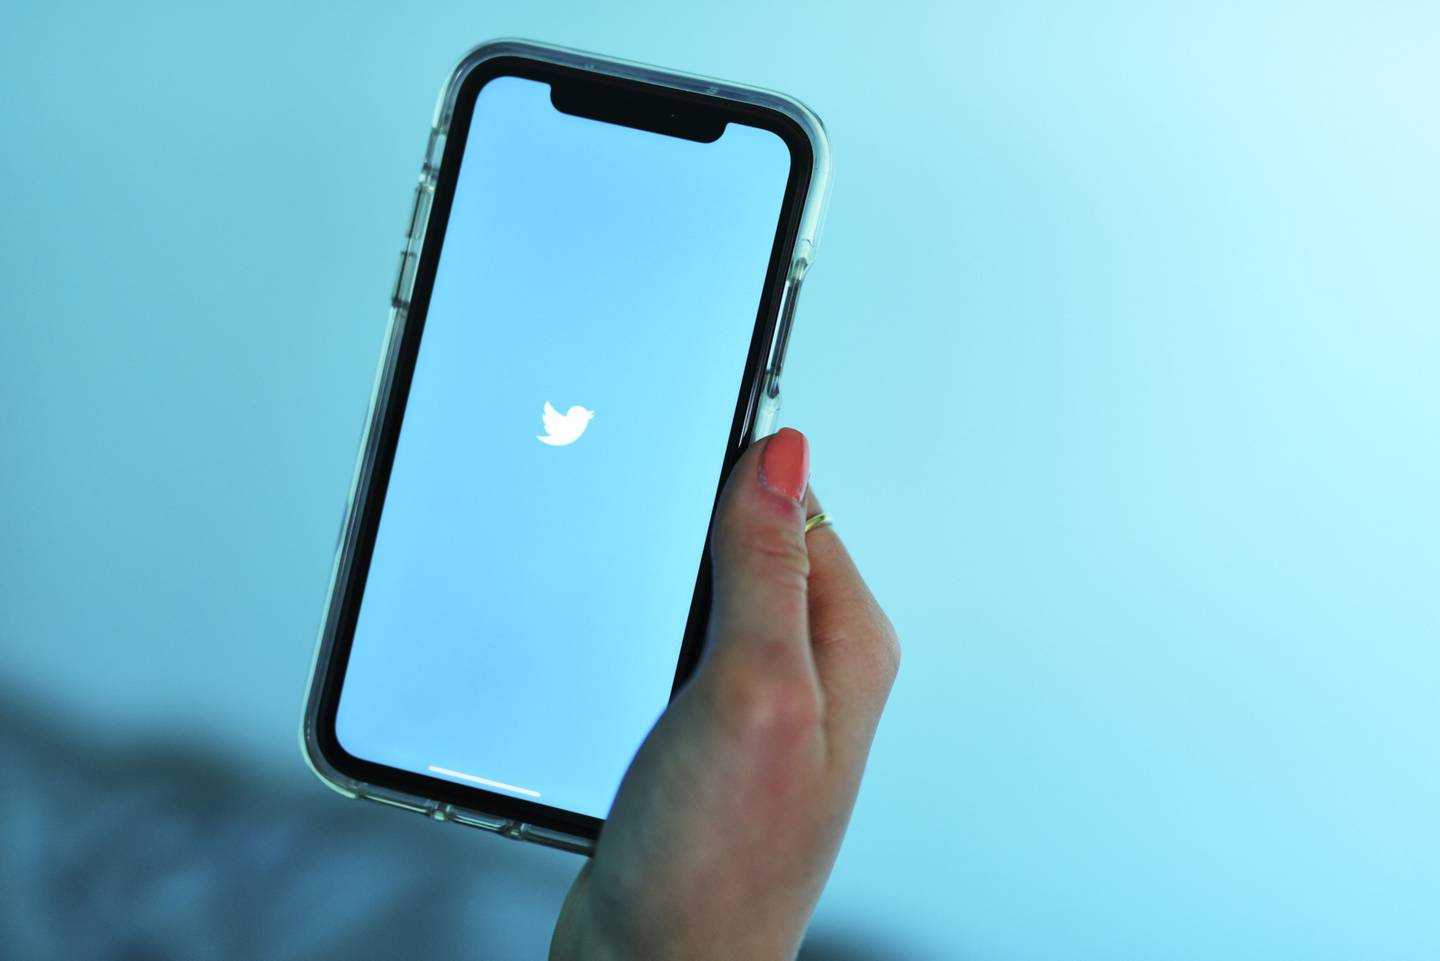 El logo de Twitter Inc. se muestra en un iPhone de Apple Inc. en esta fotografía arreglada tomada en el barrio de Brooklyn en Nueva York, Estados Unidos, el sábado 20 de abril de 2019.